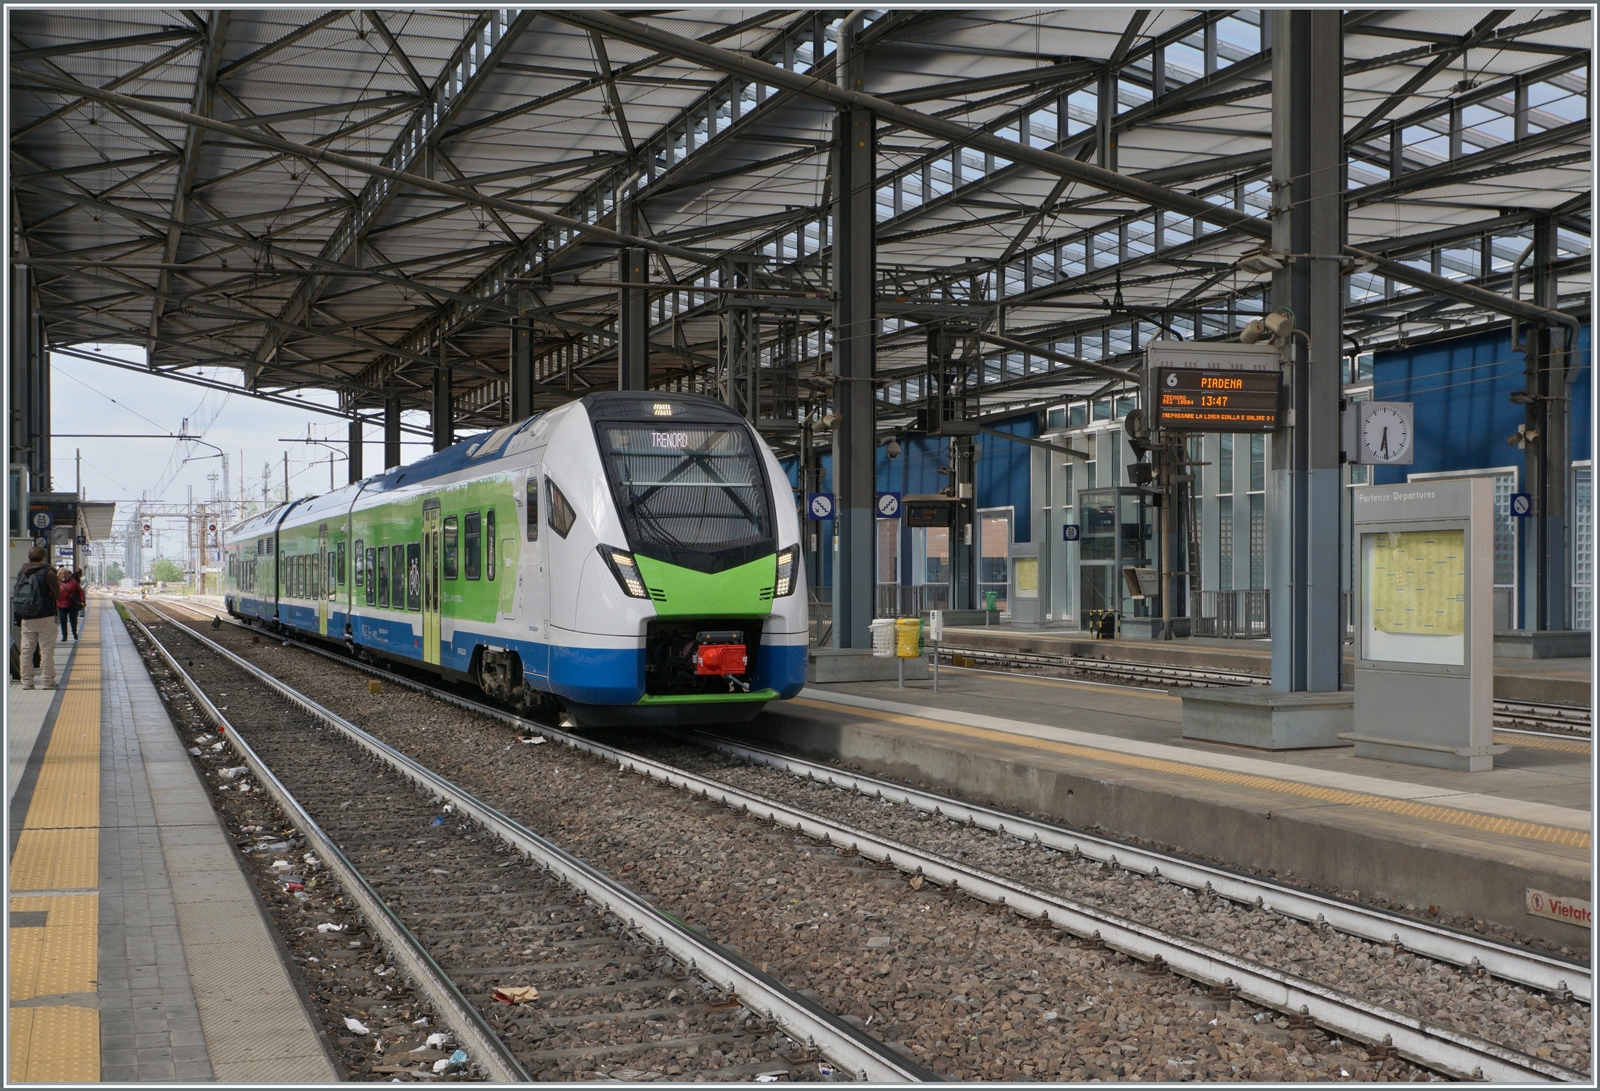 Ein neuer Zug in Parma: Der Trenord ATR 803 006 (UIC 95 83 4803 006-4 I-TN) wartet als Regionalzug 10804 auf die Abfahrt nach Piadena. Allem Anschein nach werden die ATR 803 die bisher hier eingesetzten TN Aln 663 ablösen.

17. April 2023